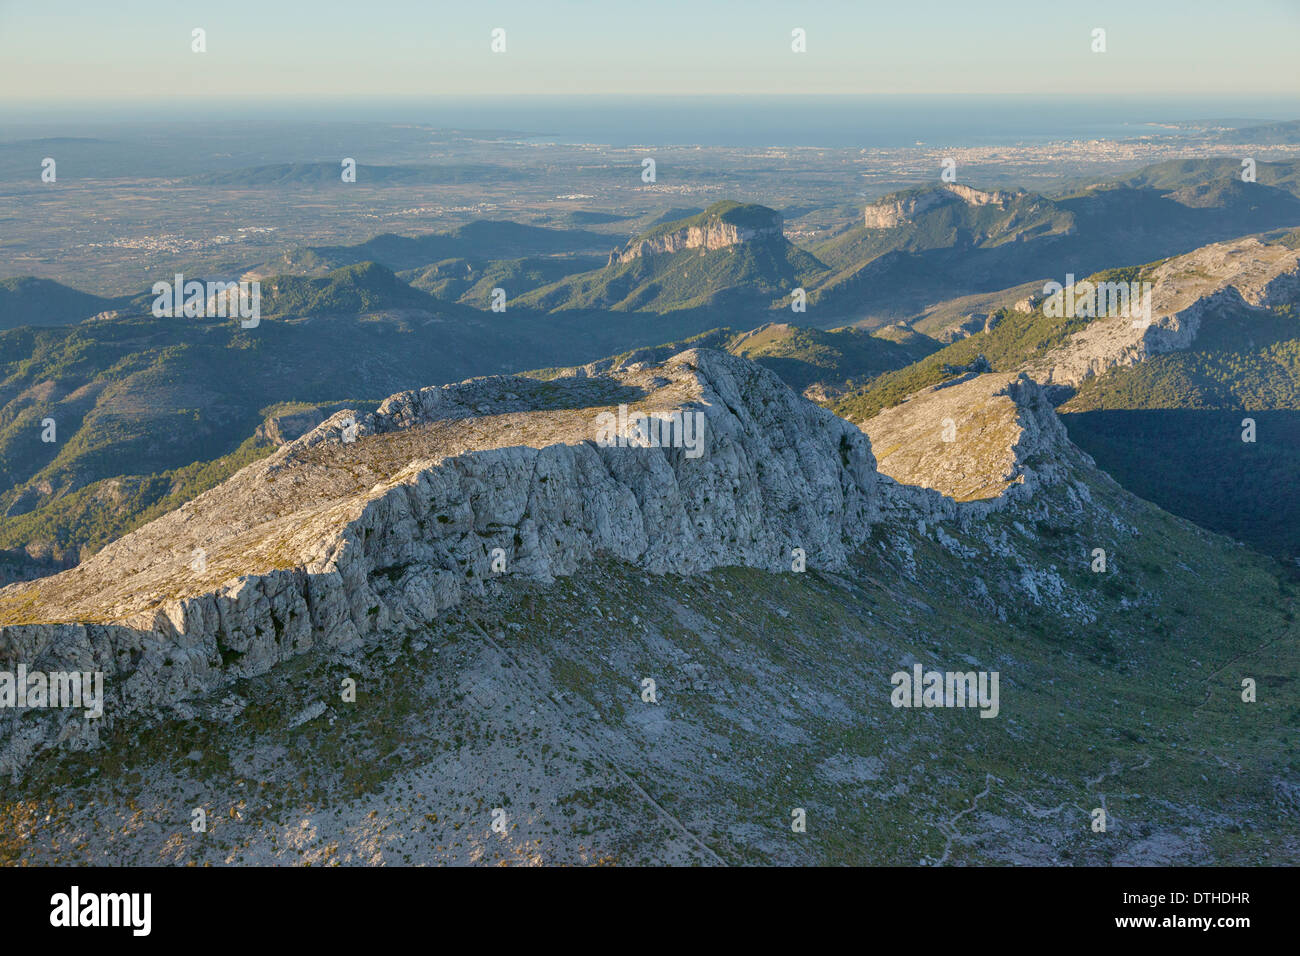 La mattina presto vista aerea di Majorca's montagne Tramuntana. Puig de Massanella top. Area Escorca. Isole Baleari, Spagna Foto Stock